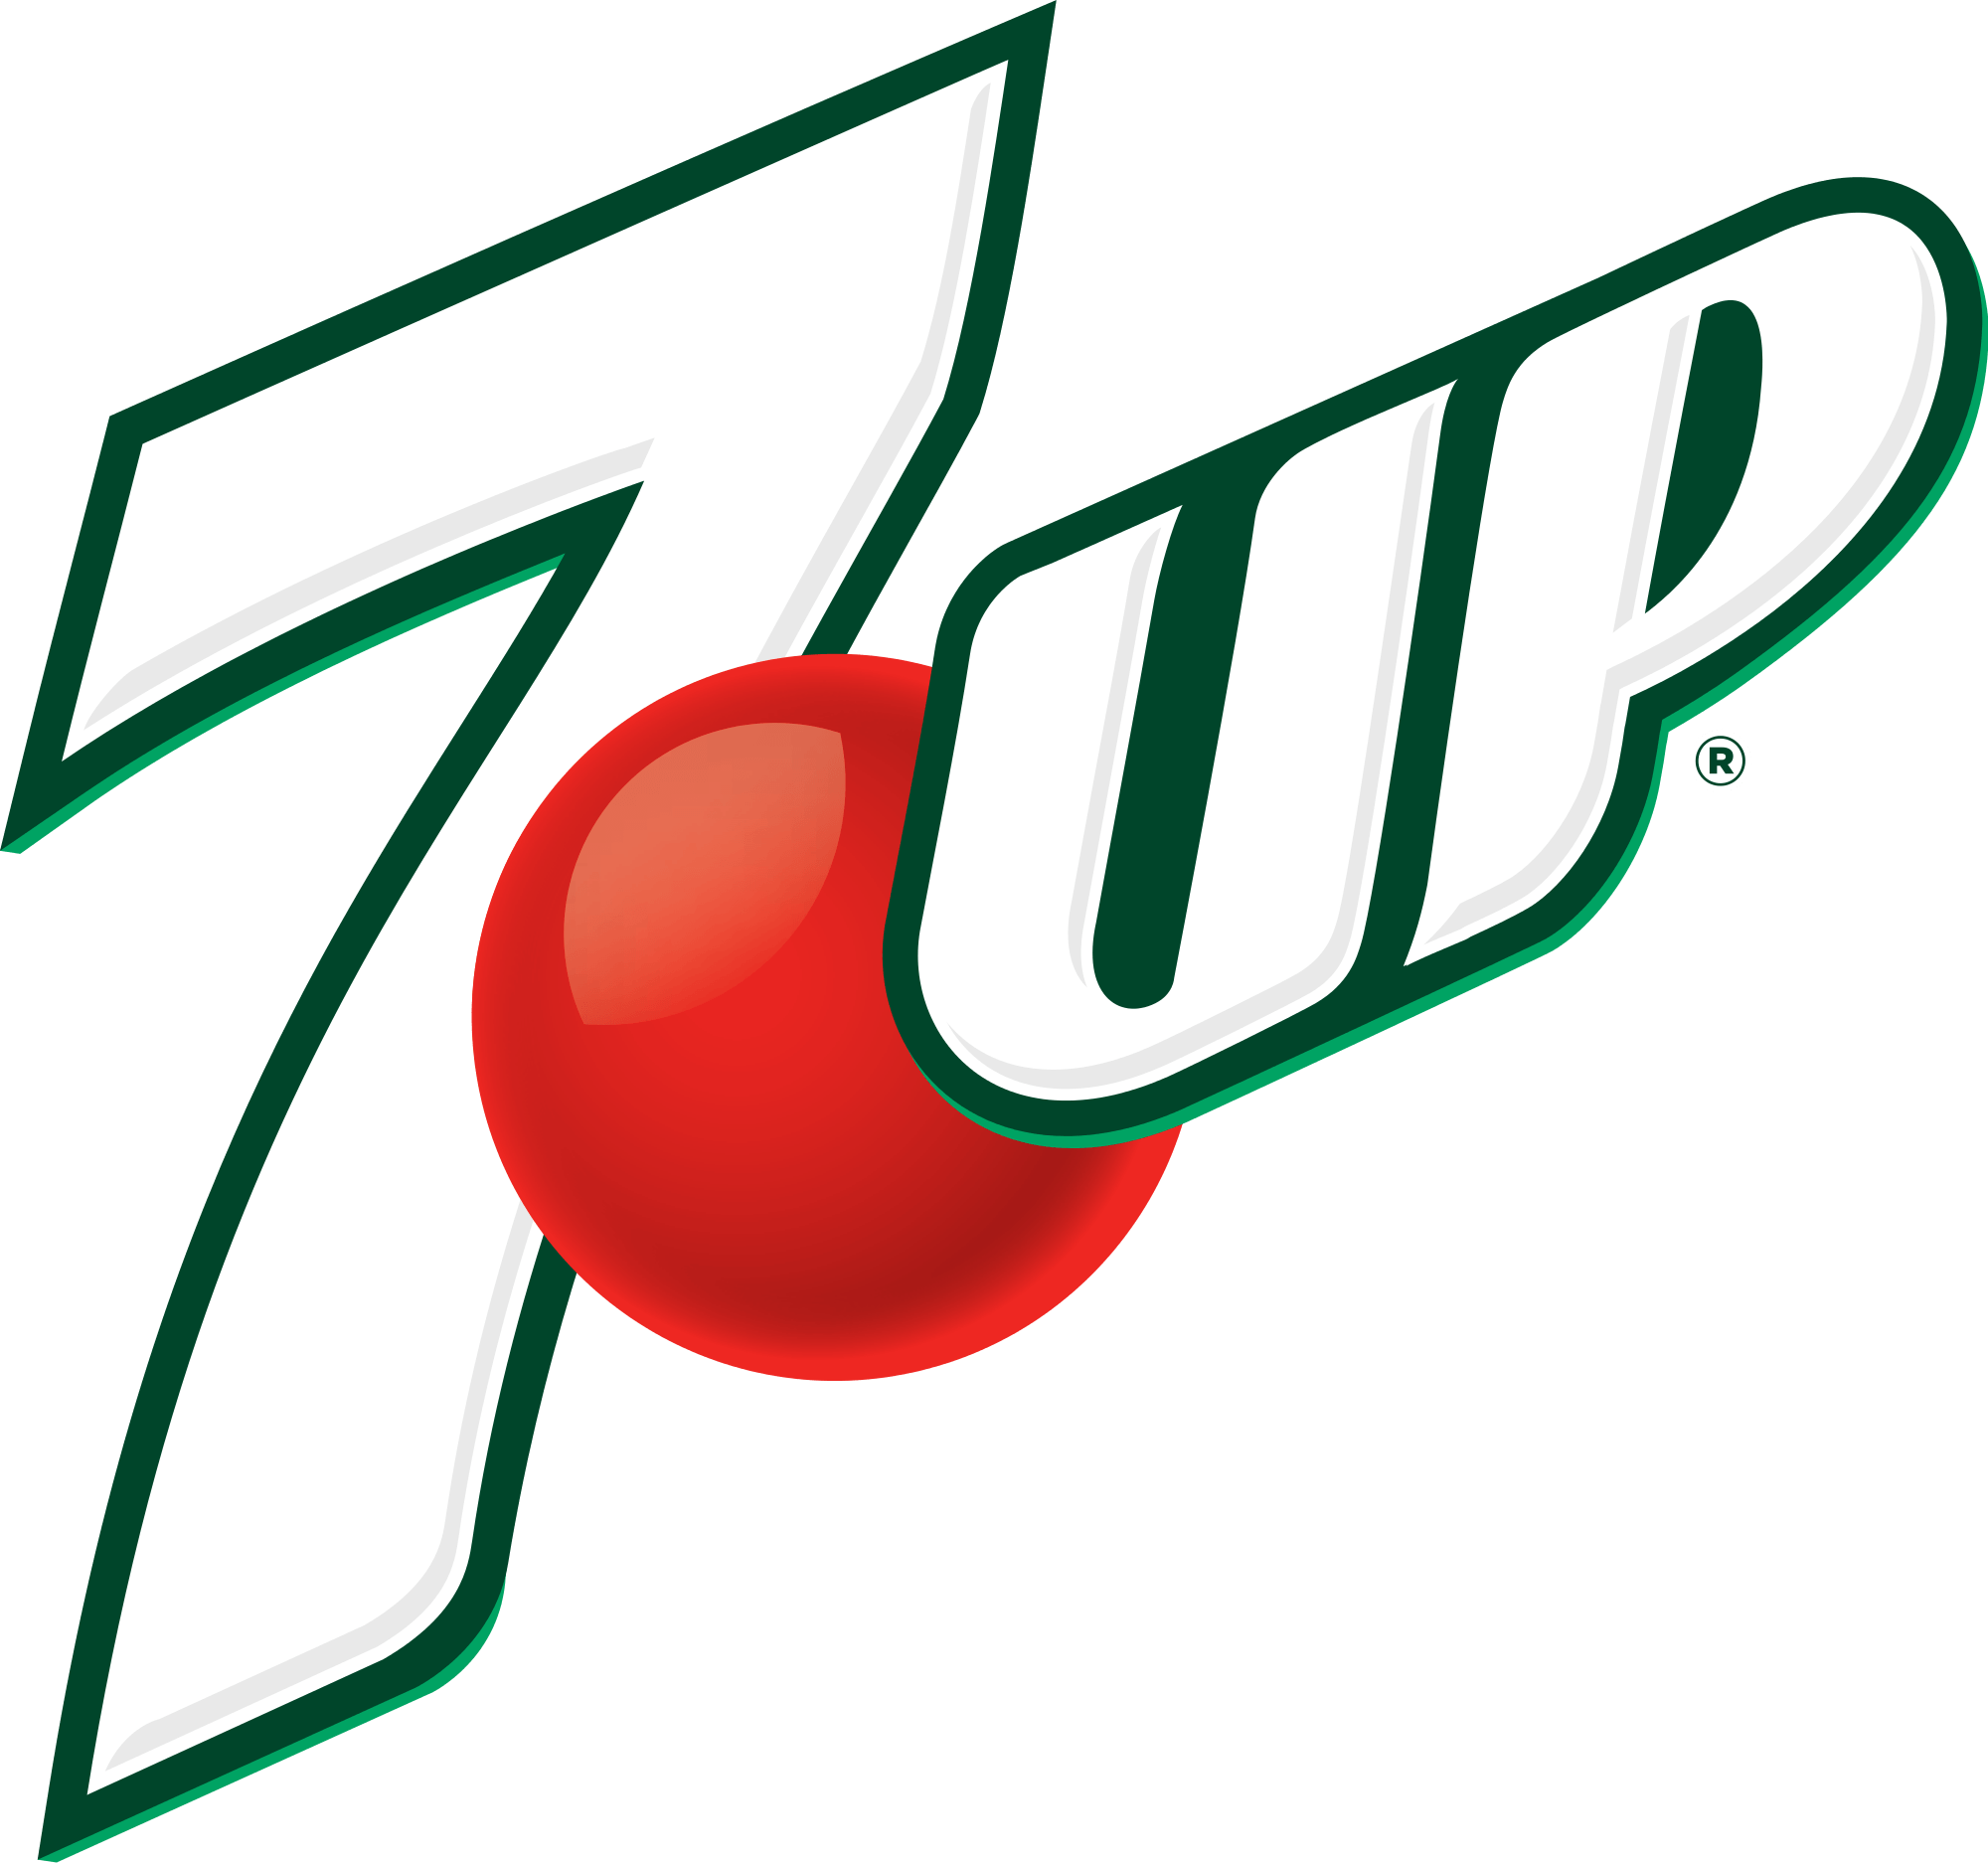 7 Up Logo - 7 Up